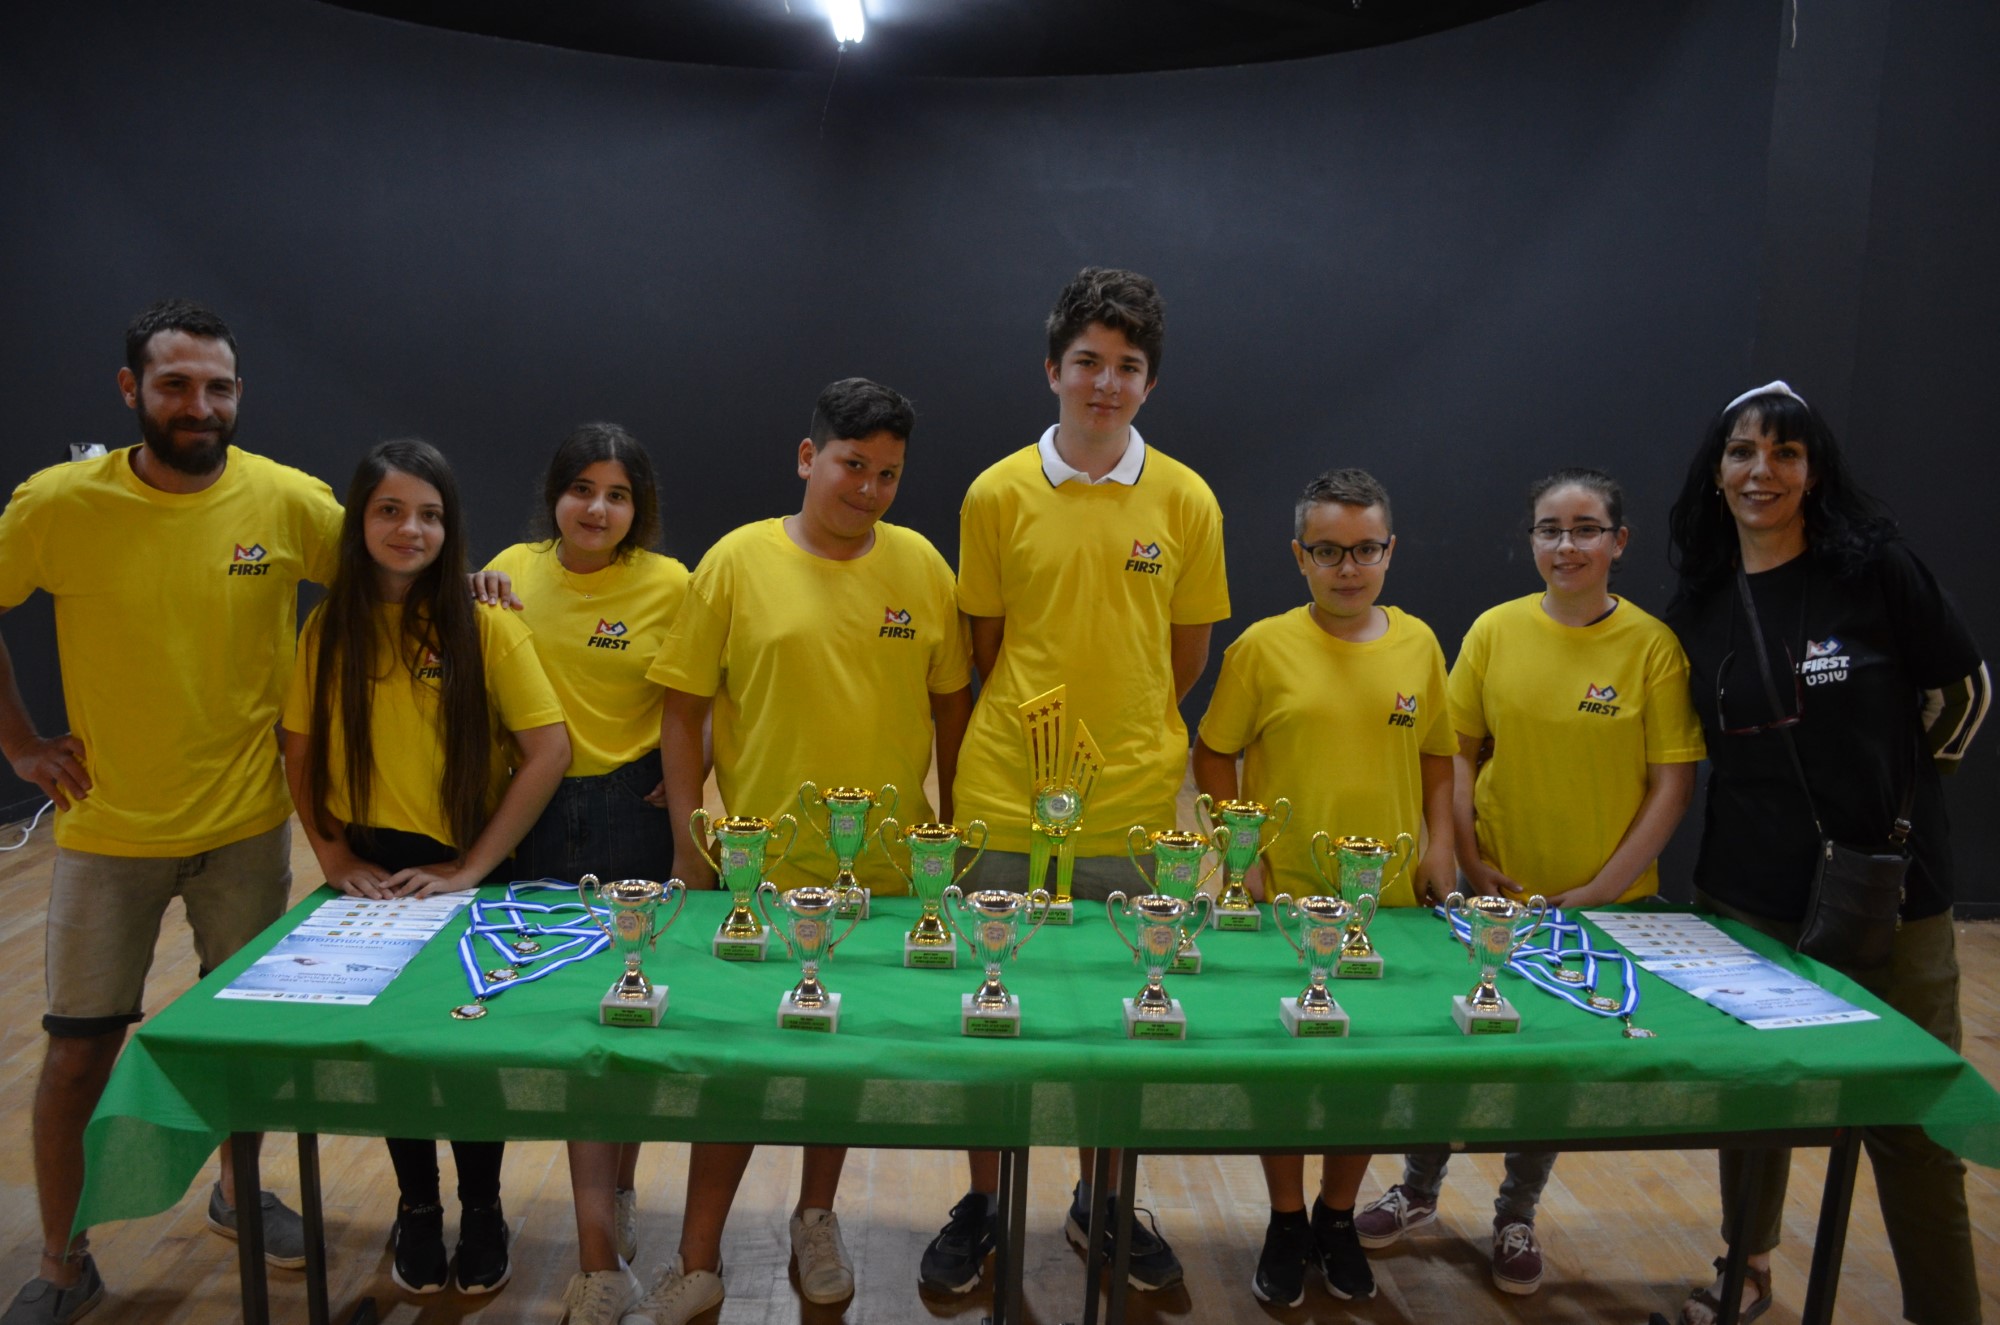 כ100 תלמידים השתתפו בתחרות הרובוטיקה האזורית של מצוינגב